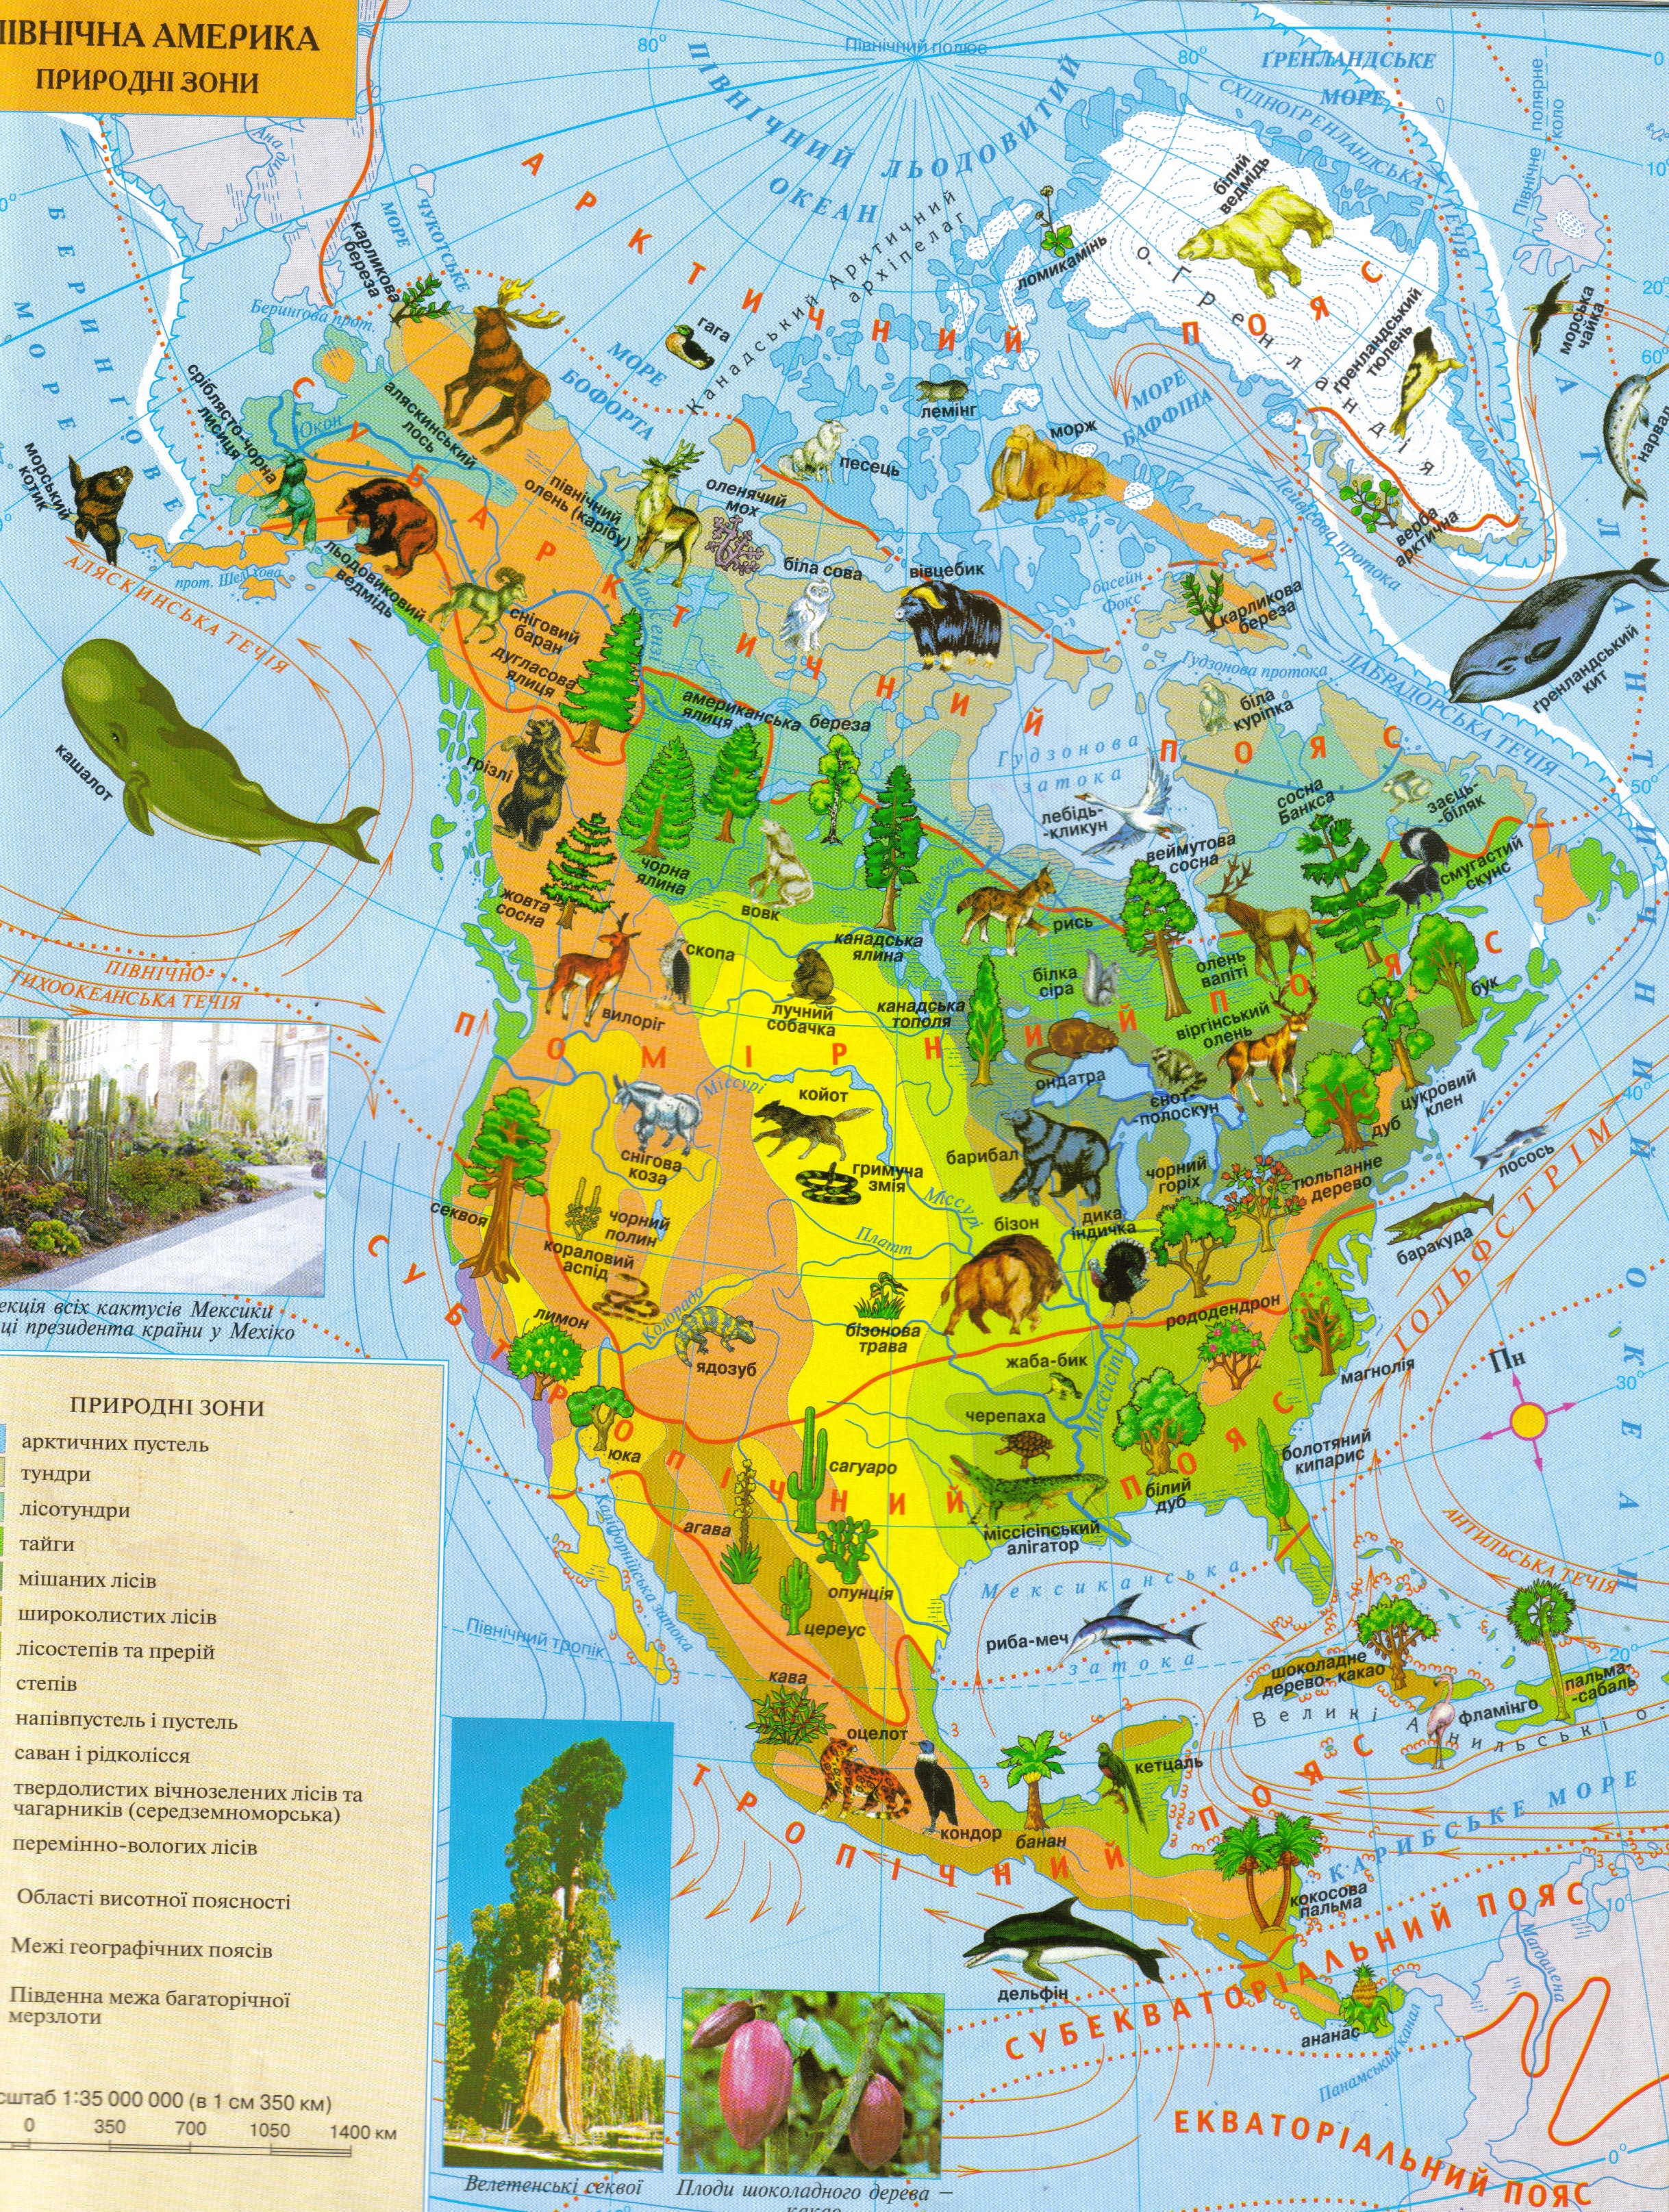 Большую часть северной америки занимает природная зона. Карта растительности Северной Америки. Атлас растительности Северной Америки. Карта природных зон Северной Америки 7 класс география. Растительный мир Северной Америки карта.